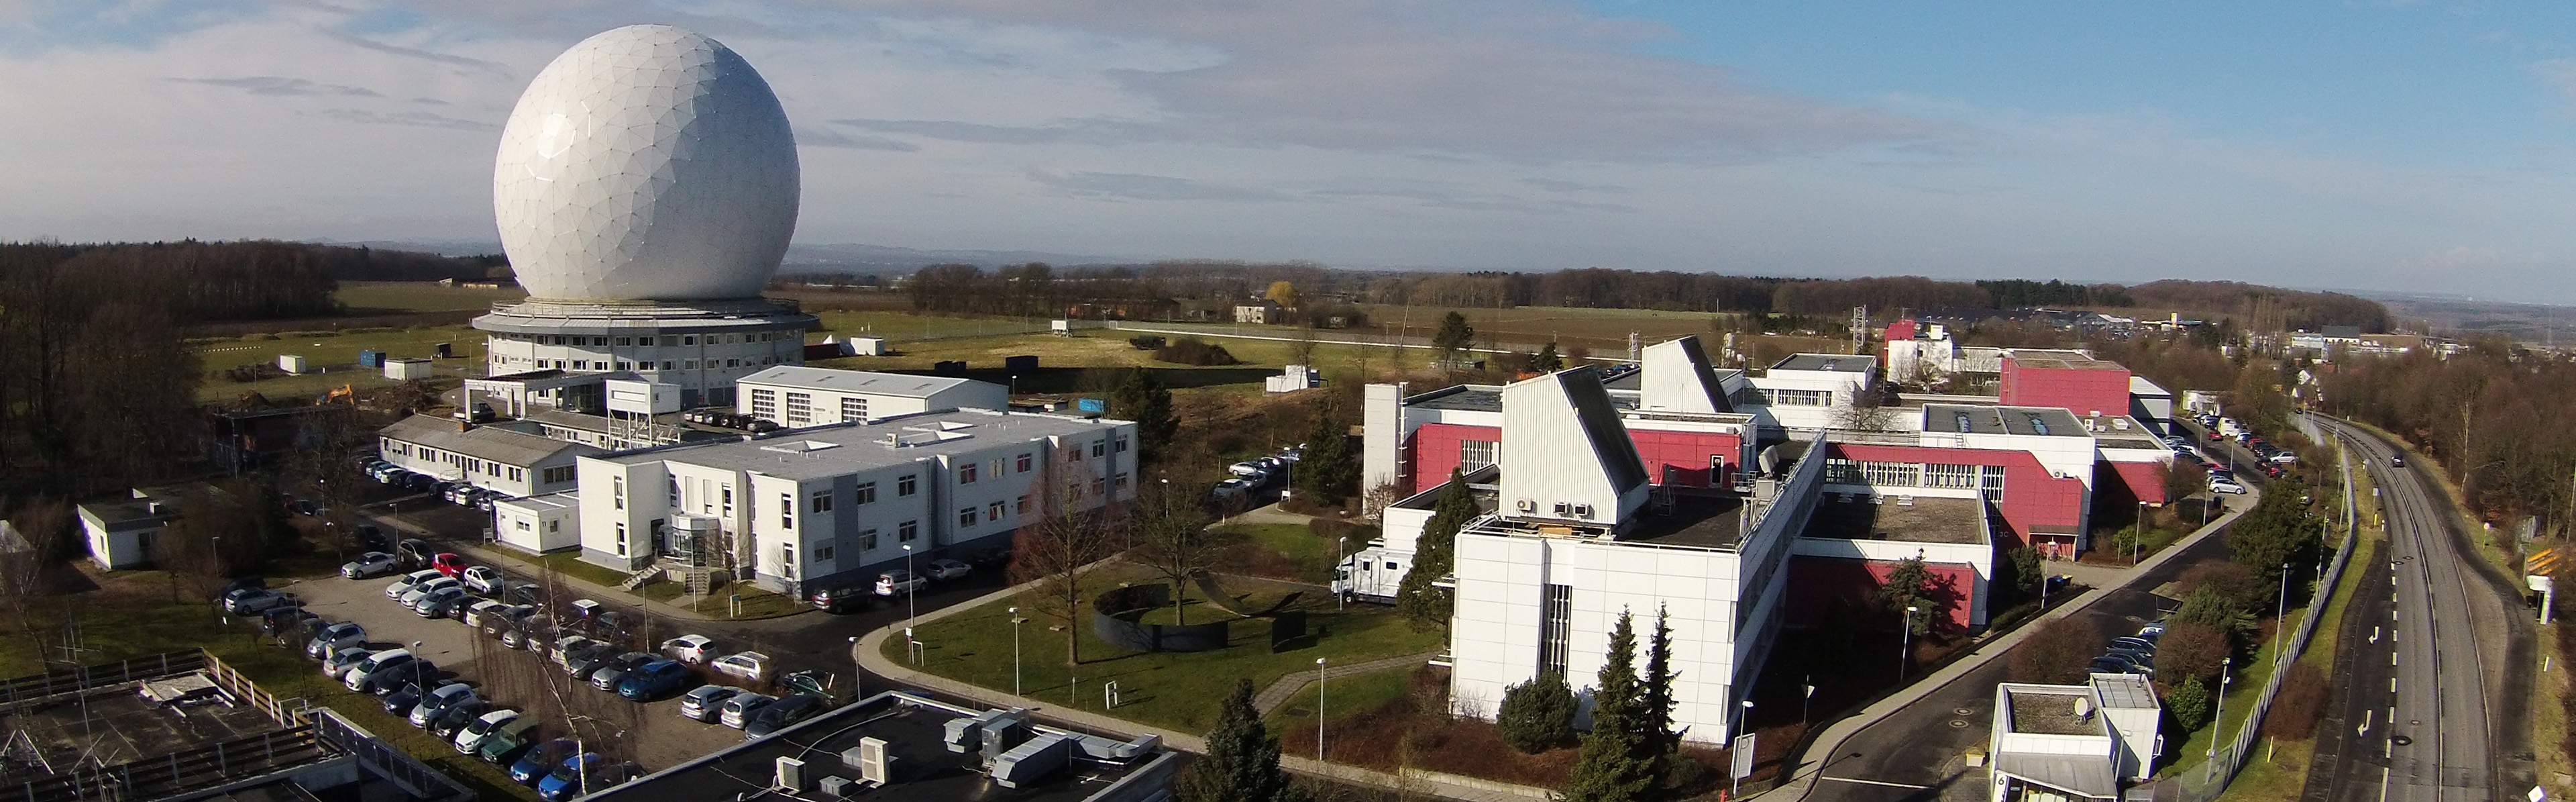 Das Fraunhofer FHR ist eines der führenden Radarforschungsinstitute in Europa. Es befasst sich mit allen Aspekten der Technologie vom Systemkonzept über Signalverarbeitung bis zum Bau eines Prototyps in Hard- und Software.